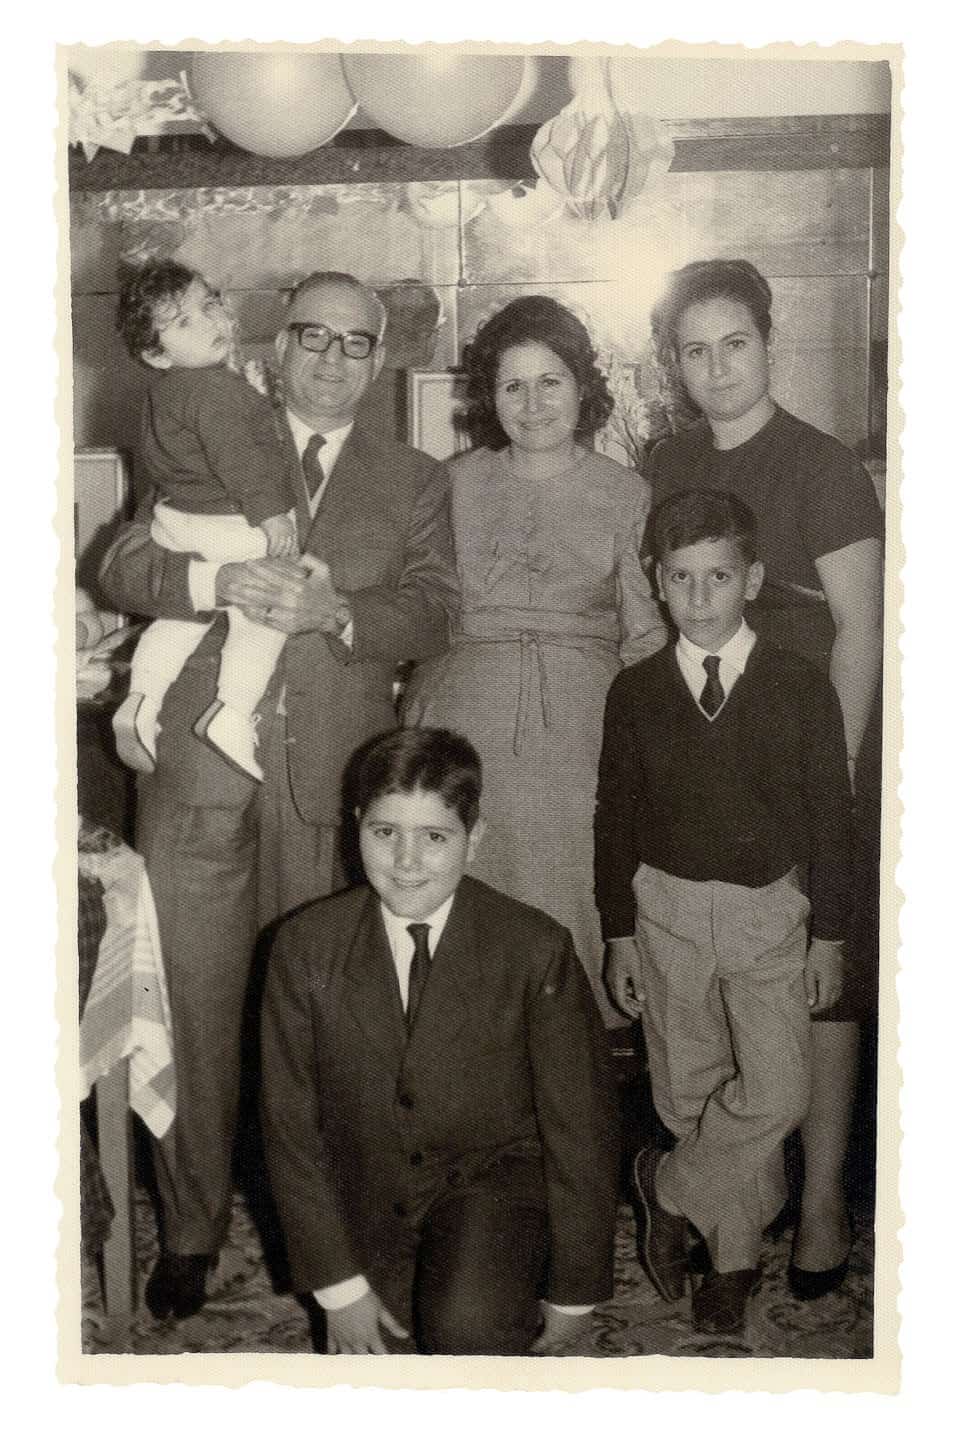 תמונה משפחתית במצרים, 1966. משמאל: אביו של אלי אבידר נושא אותו על ידיו